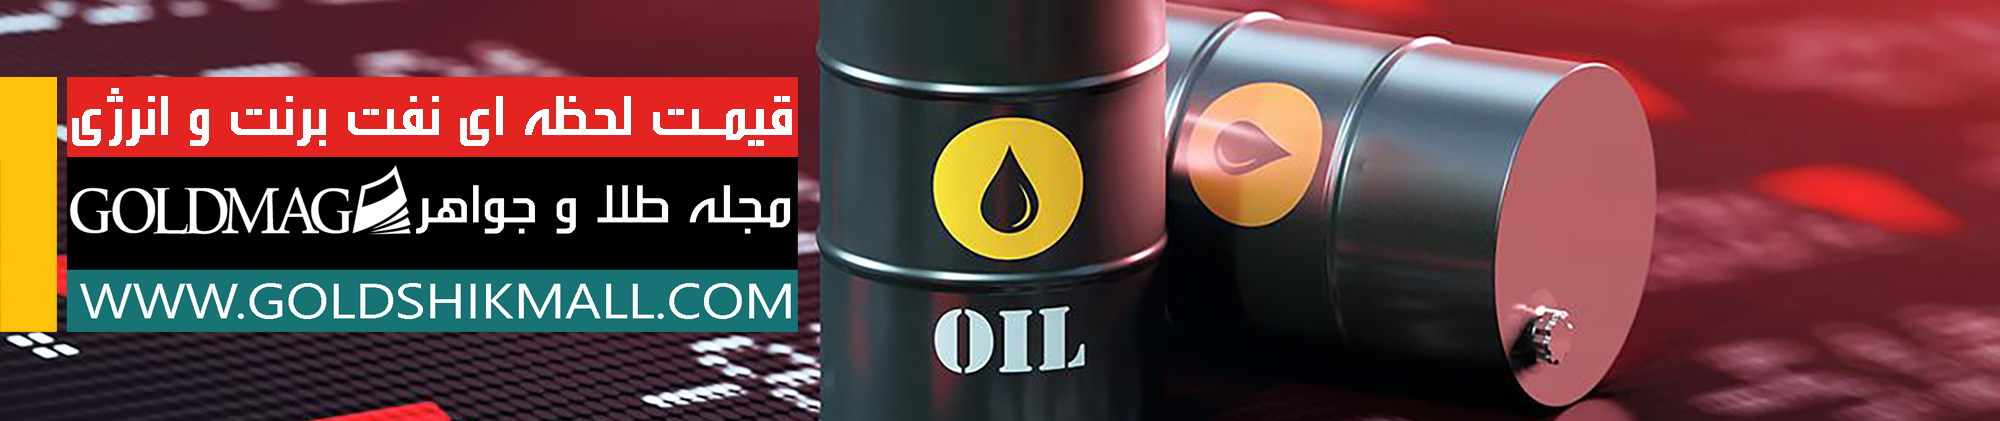 قیمت نفت برنت و انرژی امروز شنبه 1400/06/20 به همراه نمودار نرخ لحظه ای در بازار جهانی